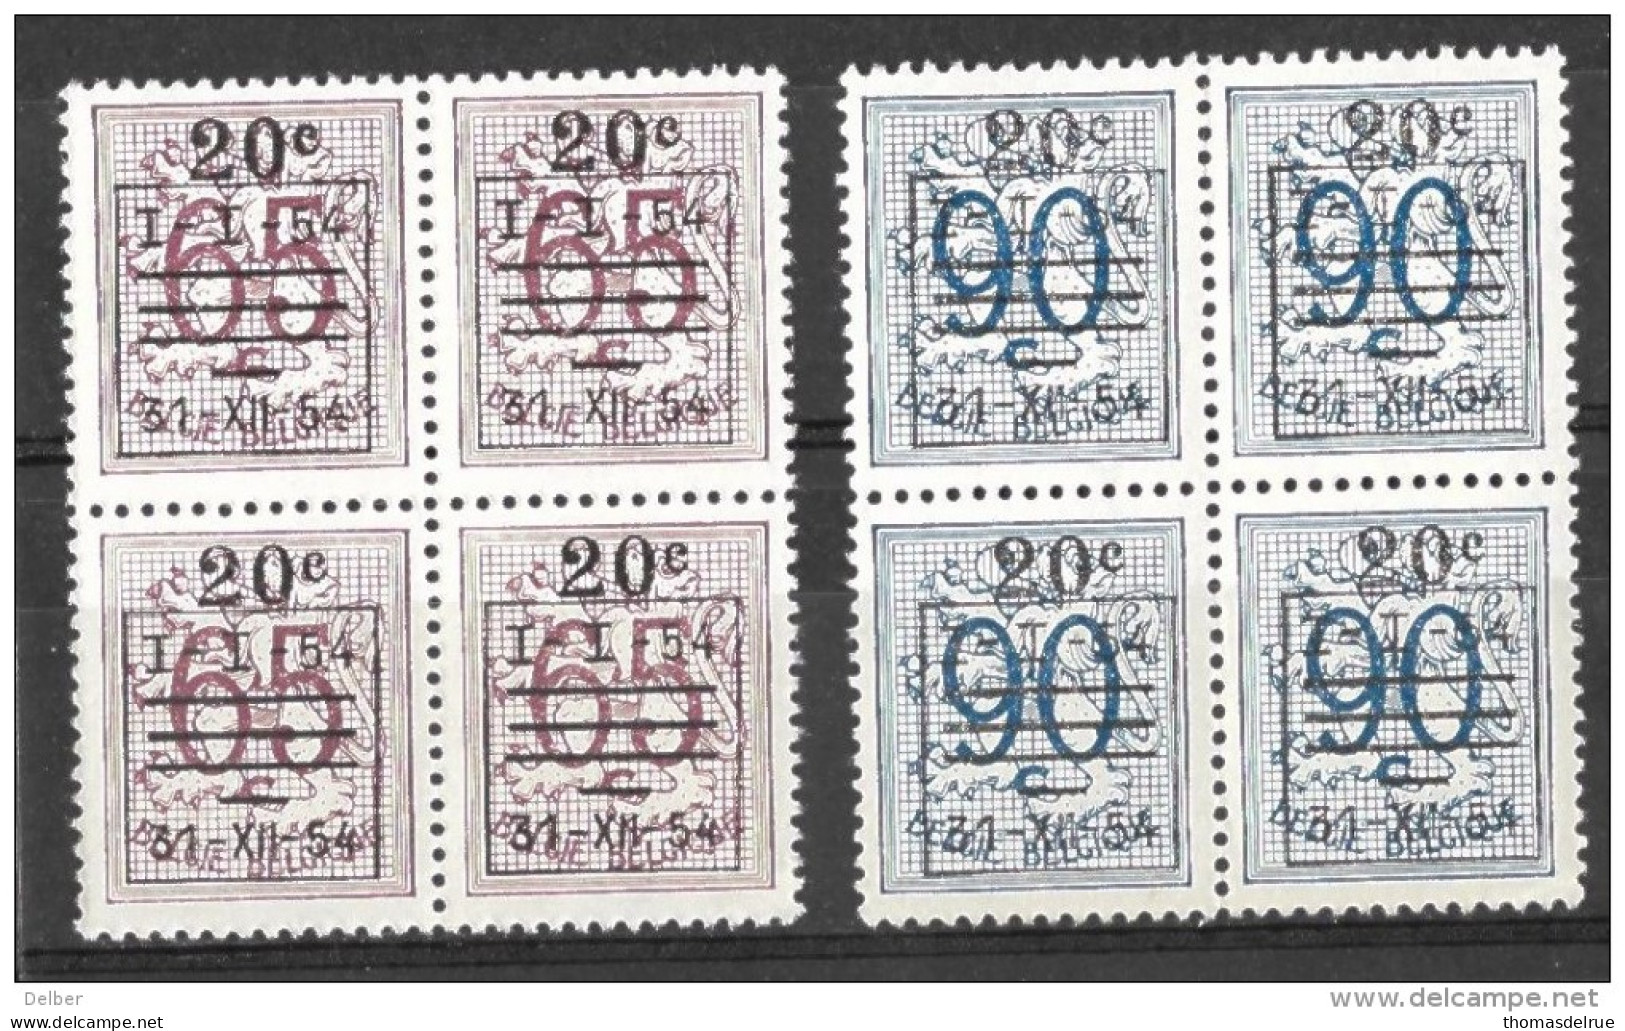 _6R-663: Restje Van 2 Zegels  In Blok V.4.. .. Om Verder Uit Te Zoeken: 941/2: XX : Postfris...: De  Preo's... - 1951-1975 Heraldieke Leeuw